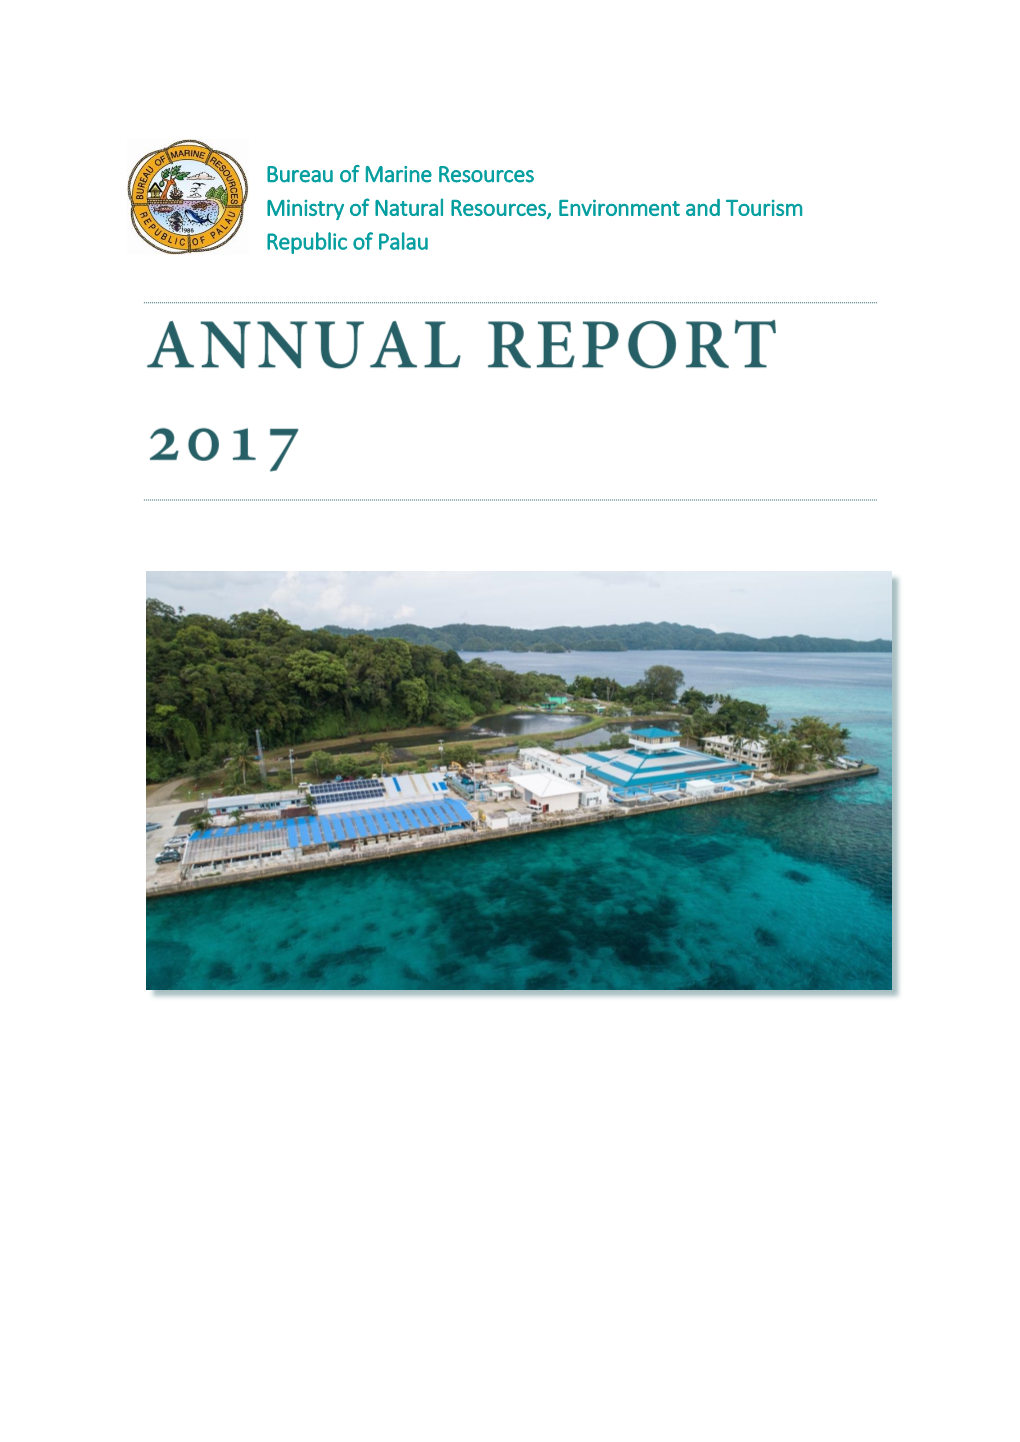 Republic of Palau Bureau of Marine Resources Annual Report 2017